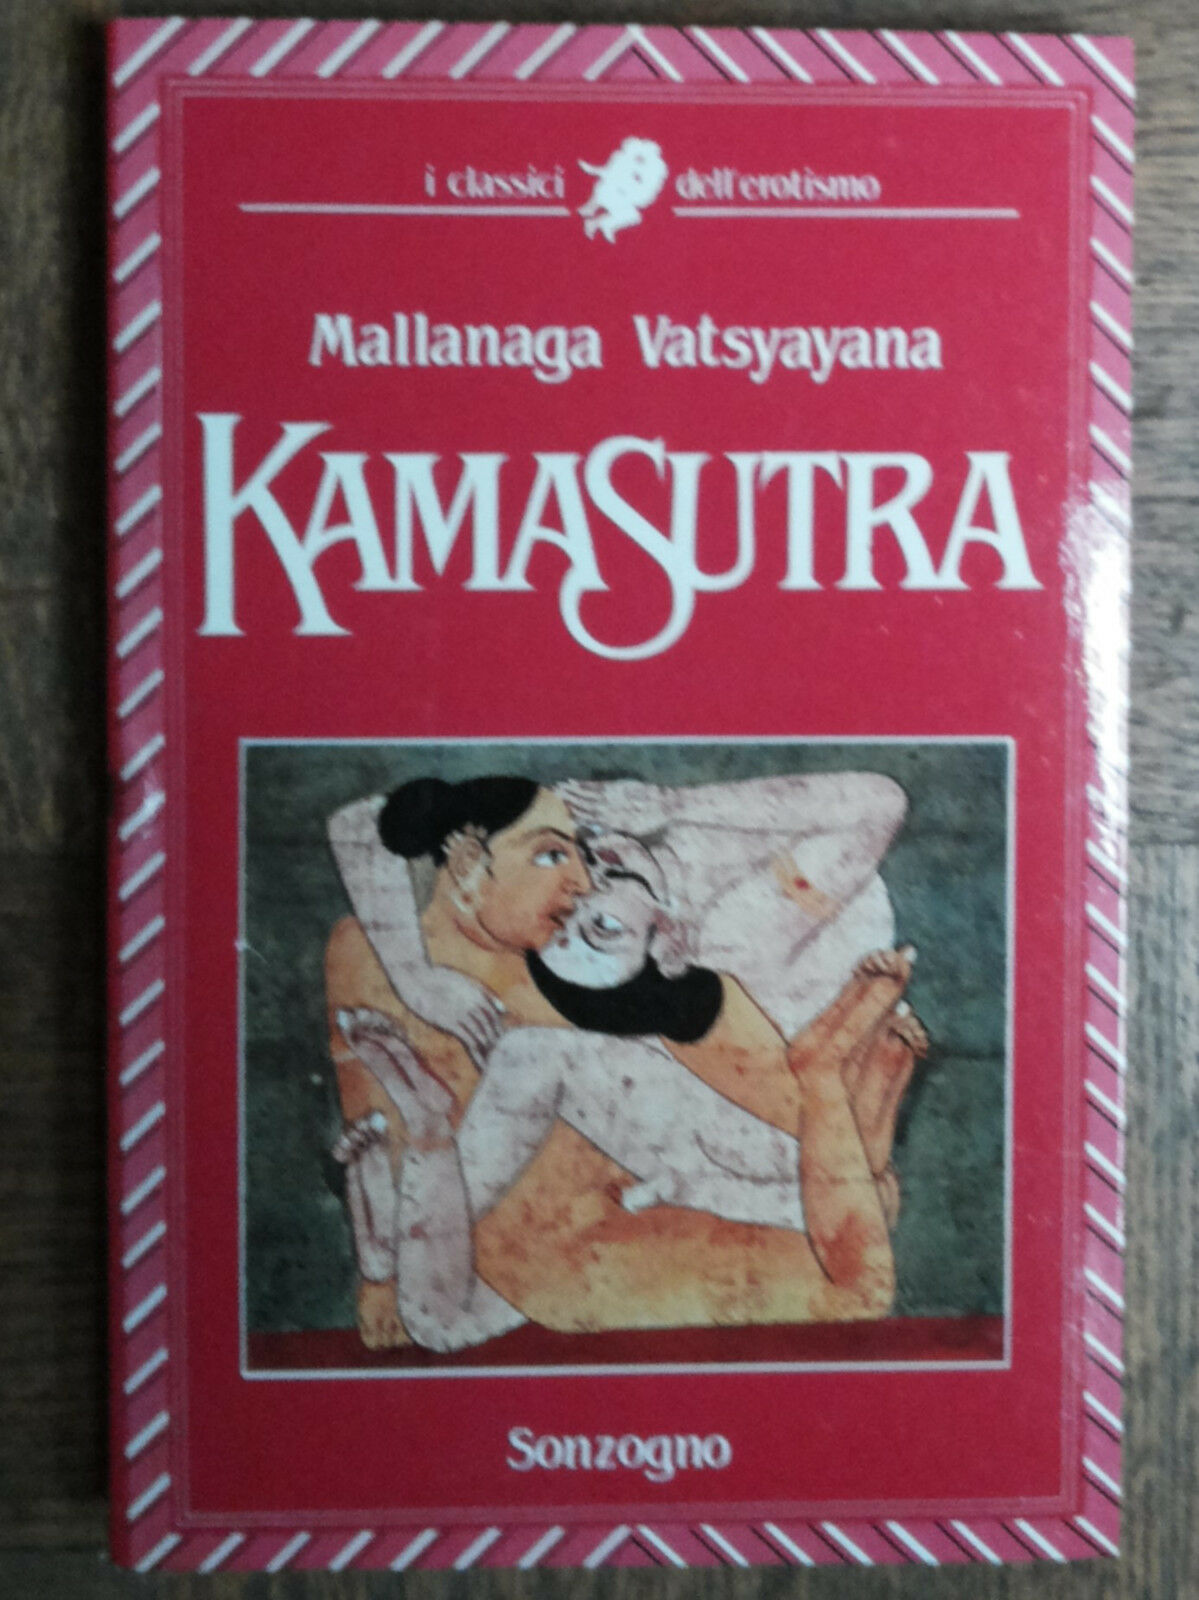 Kamasutra - Vatsayayana - Sonzogno,1986 - R